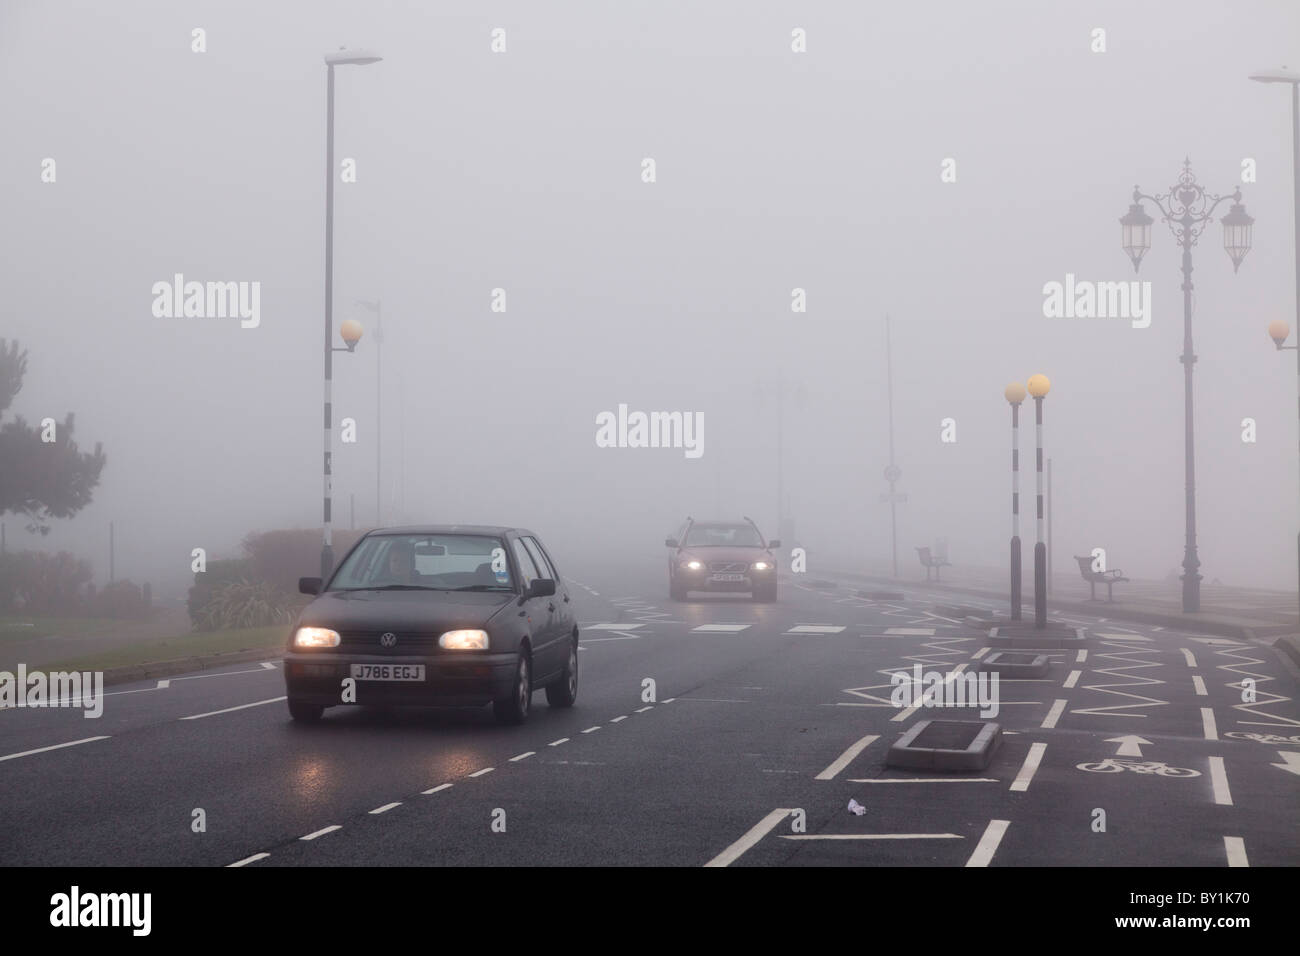 Le automobili in ambiente urbano con la segnaletica stradale orizzontale su un nebbioso giorno con luci accese Foto Stock